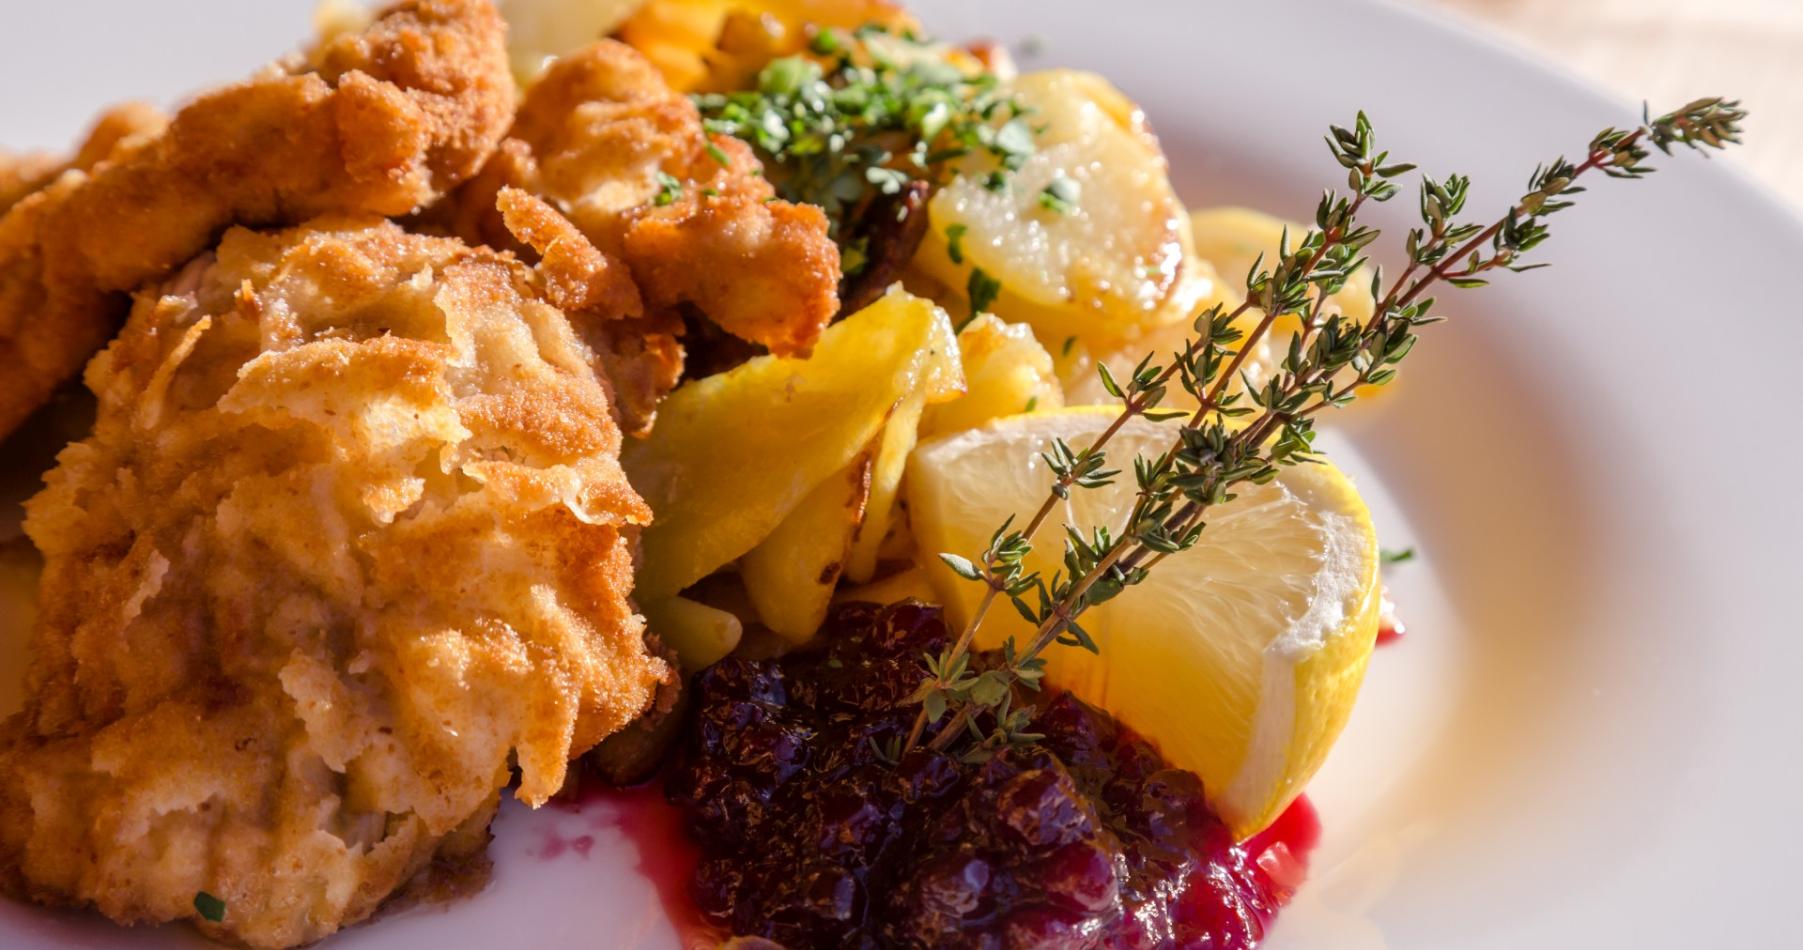 Wiener schnitzel with potatoes and cranberry jam